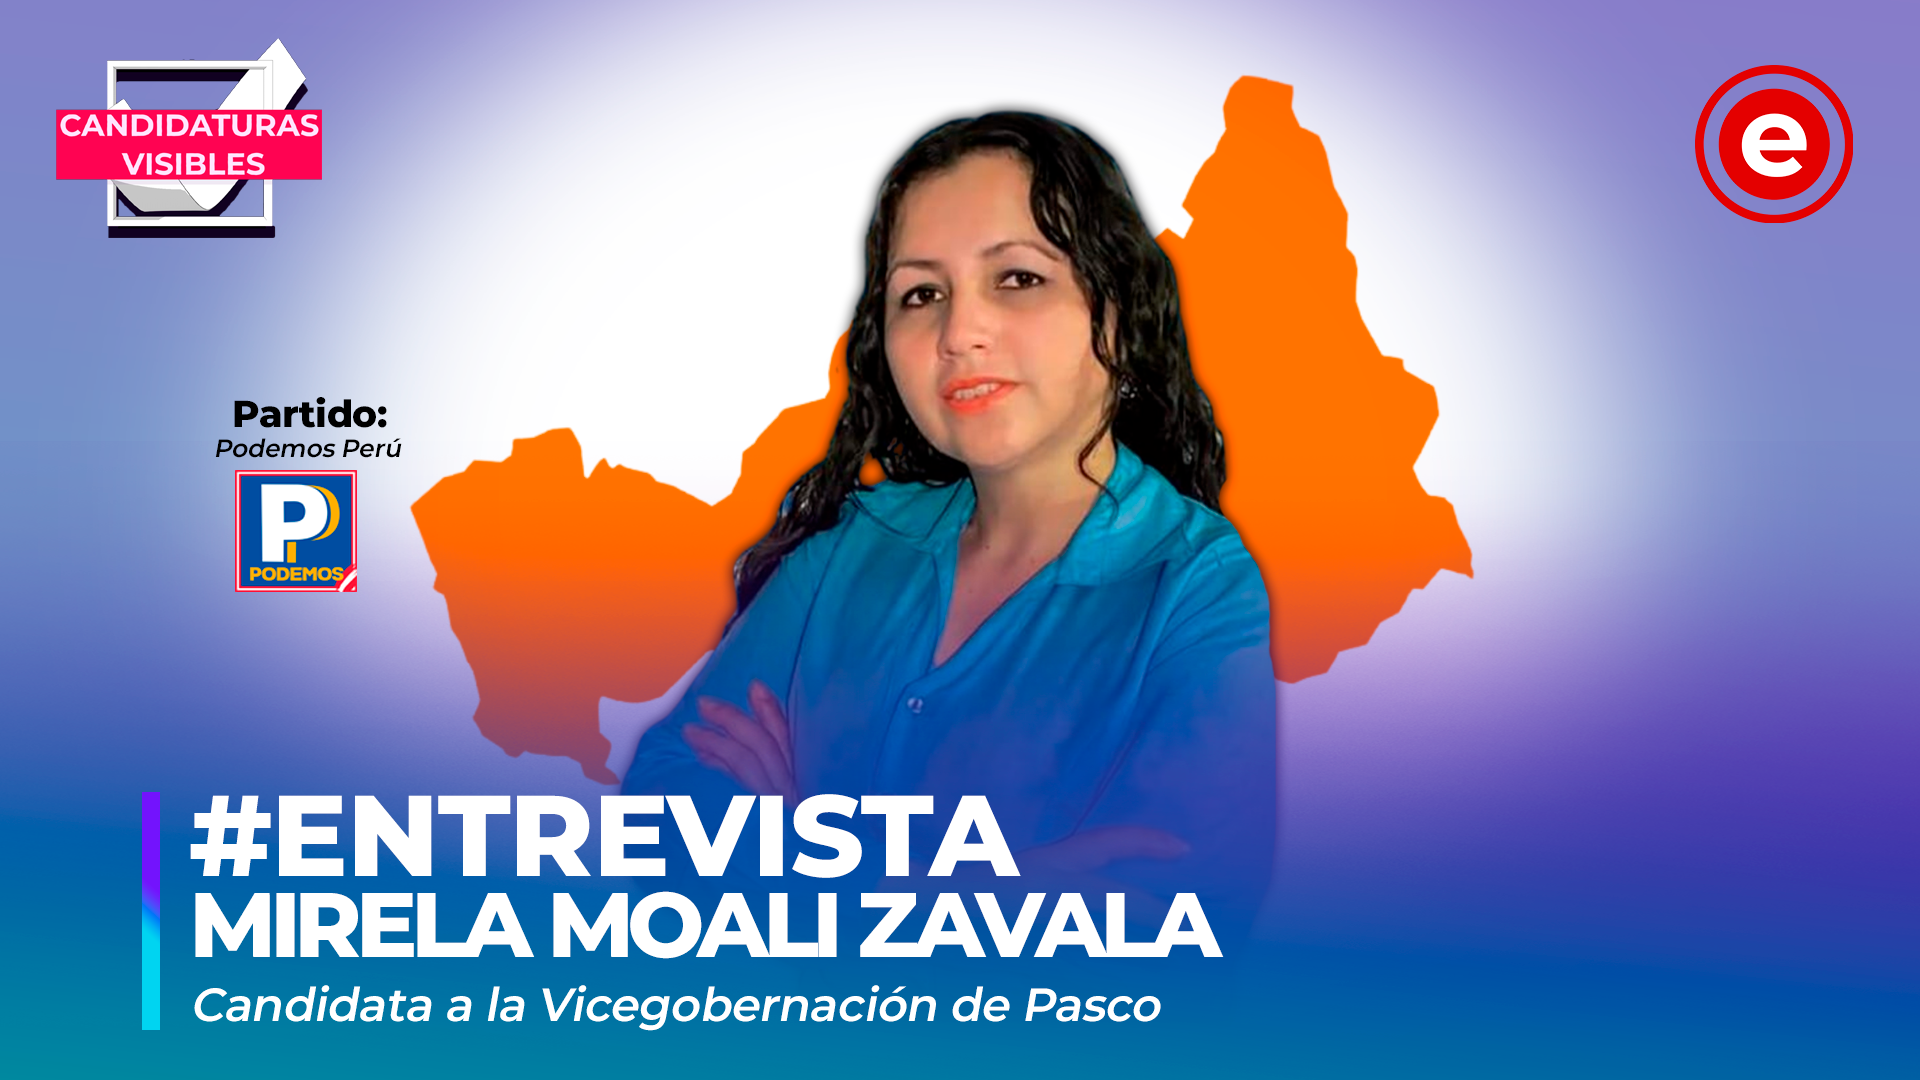 Candidaturas Visibles |  Mirela Moali, candidata a la vicegobernación de Pasco por Podemos Perú